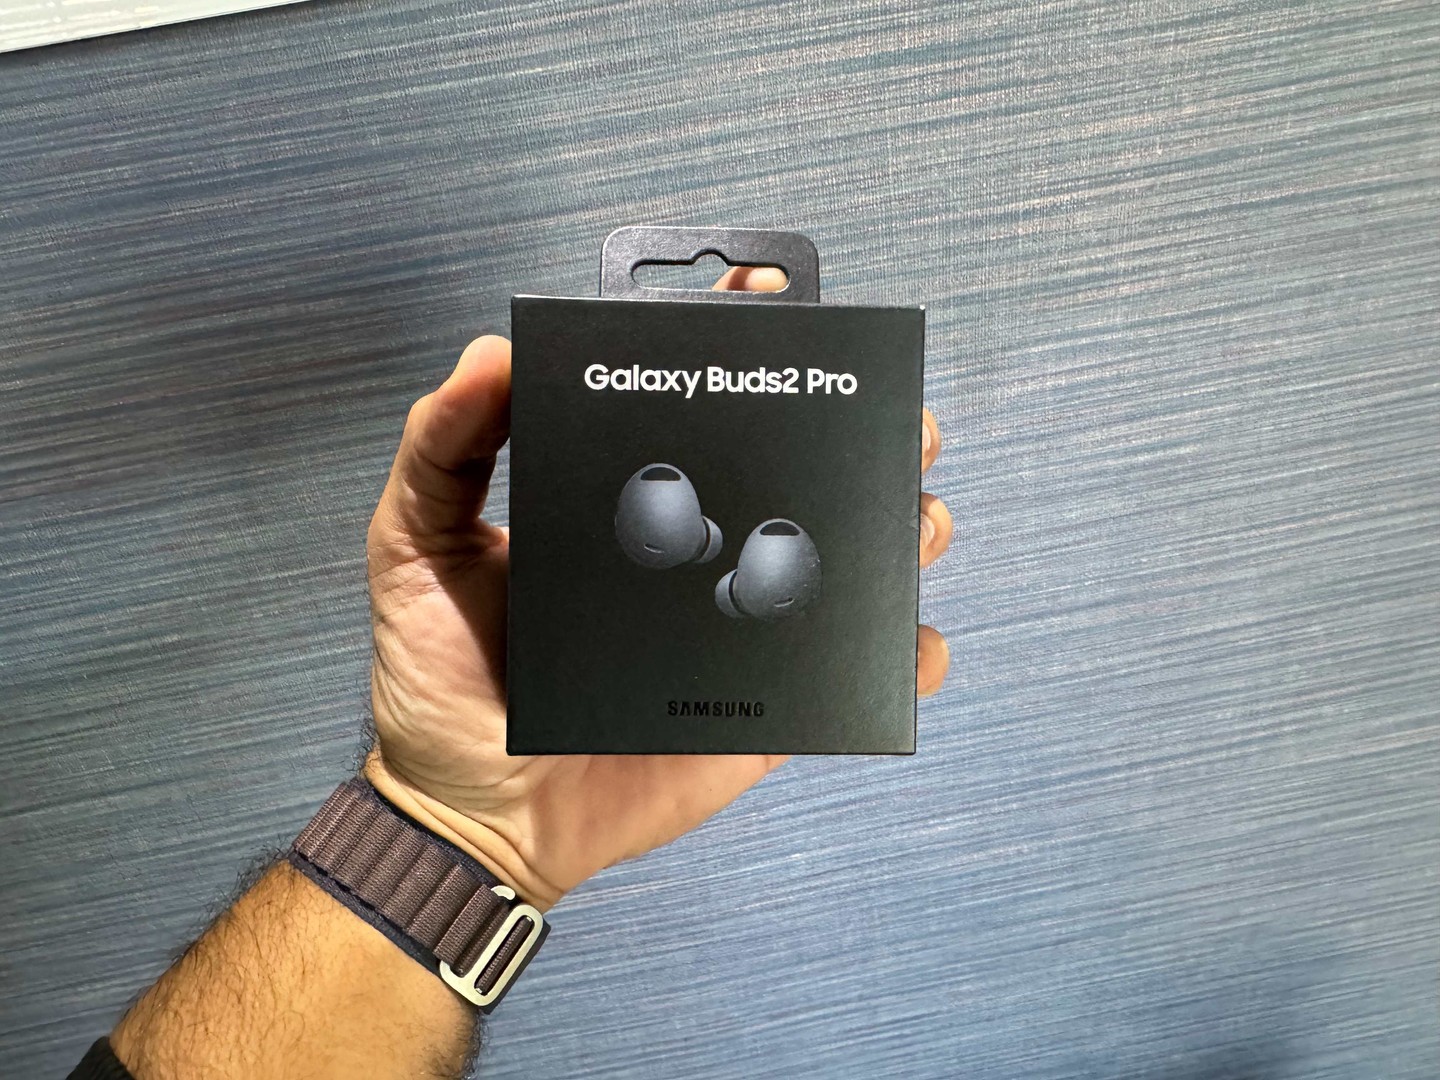 accesorios para electronica - Audífonos inalámbricos Galaxy Buds2 Pro Negros Nuevos | Originales, $ 9,500 NEG 0